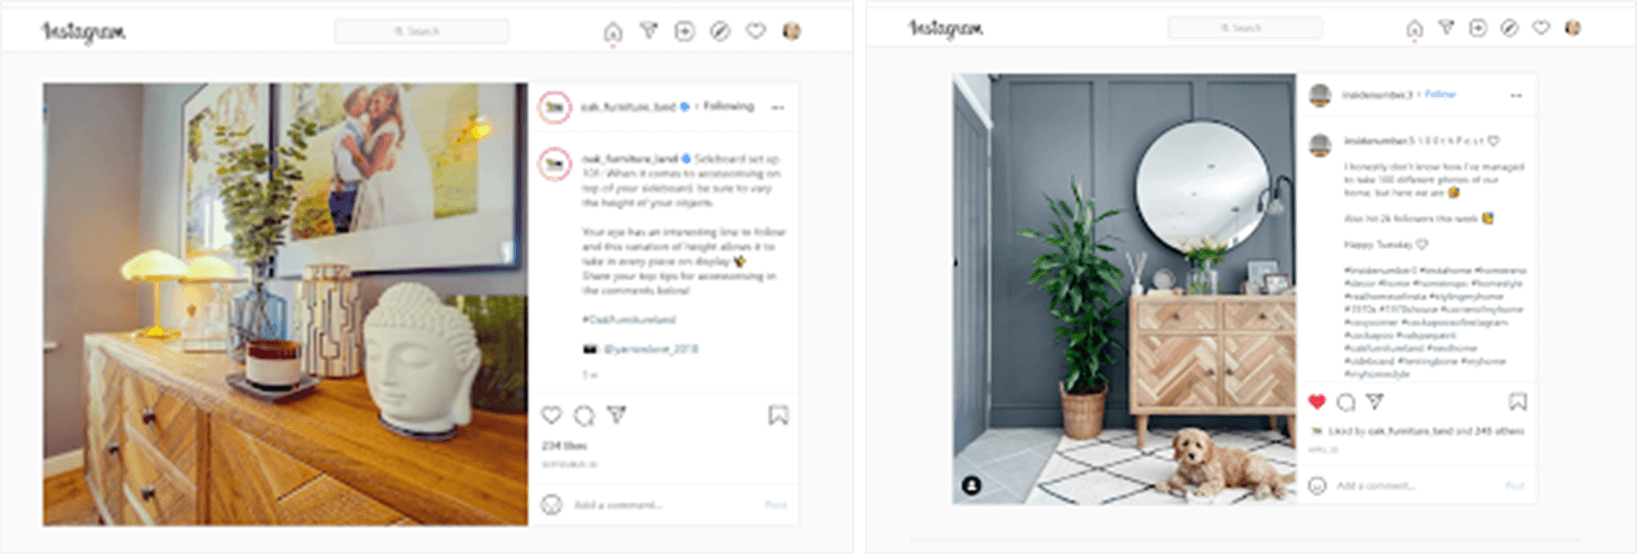 Instagram-Posts mit Möbeln von Oak Furnitureland